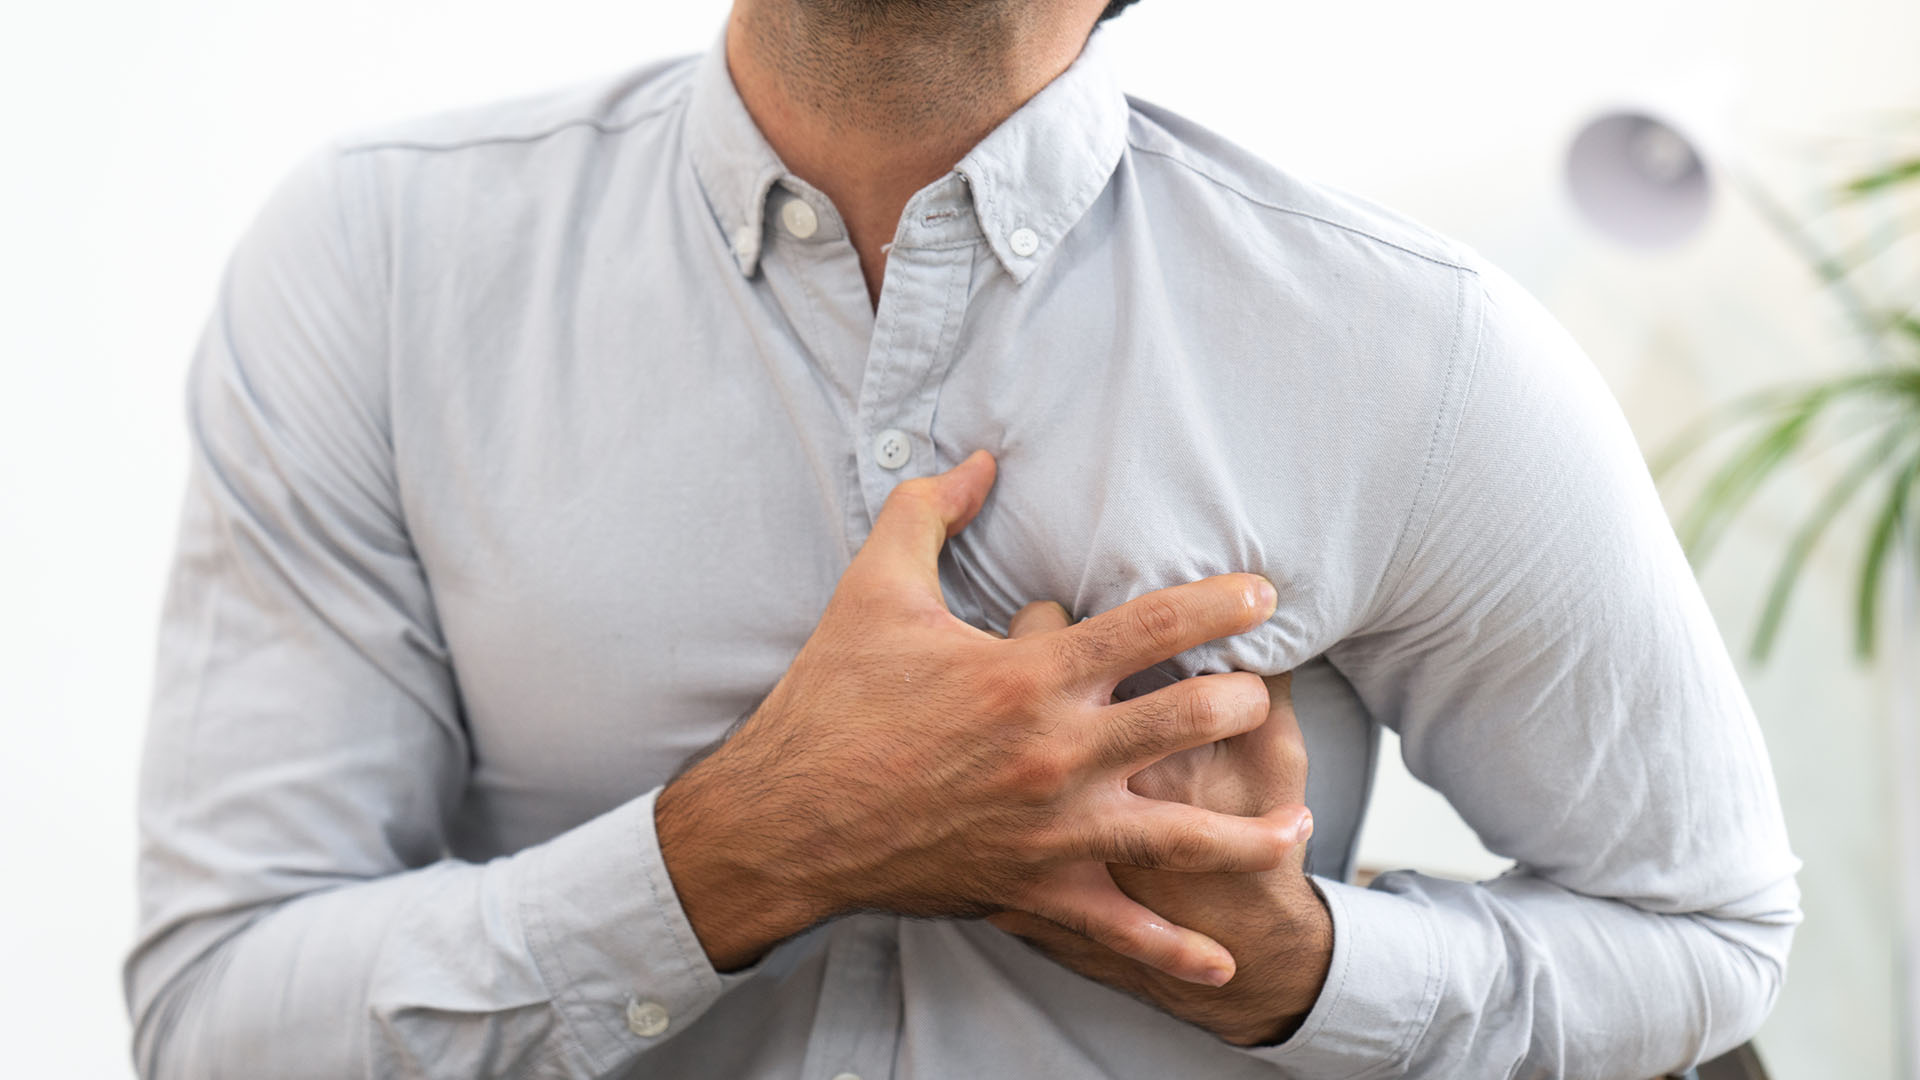 Cada vez son más los estudios científicos sobre las consecuencias cardíacas de la enfermedad COVID-19